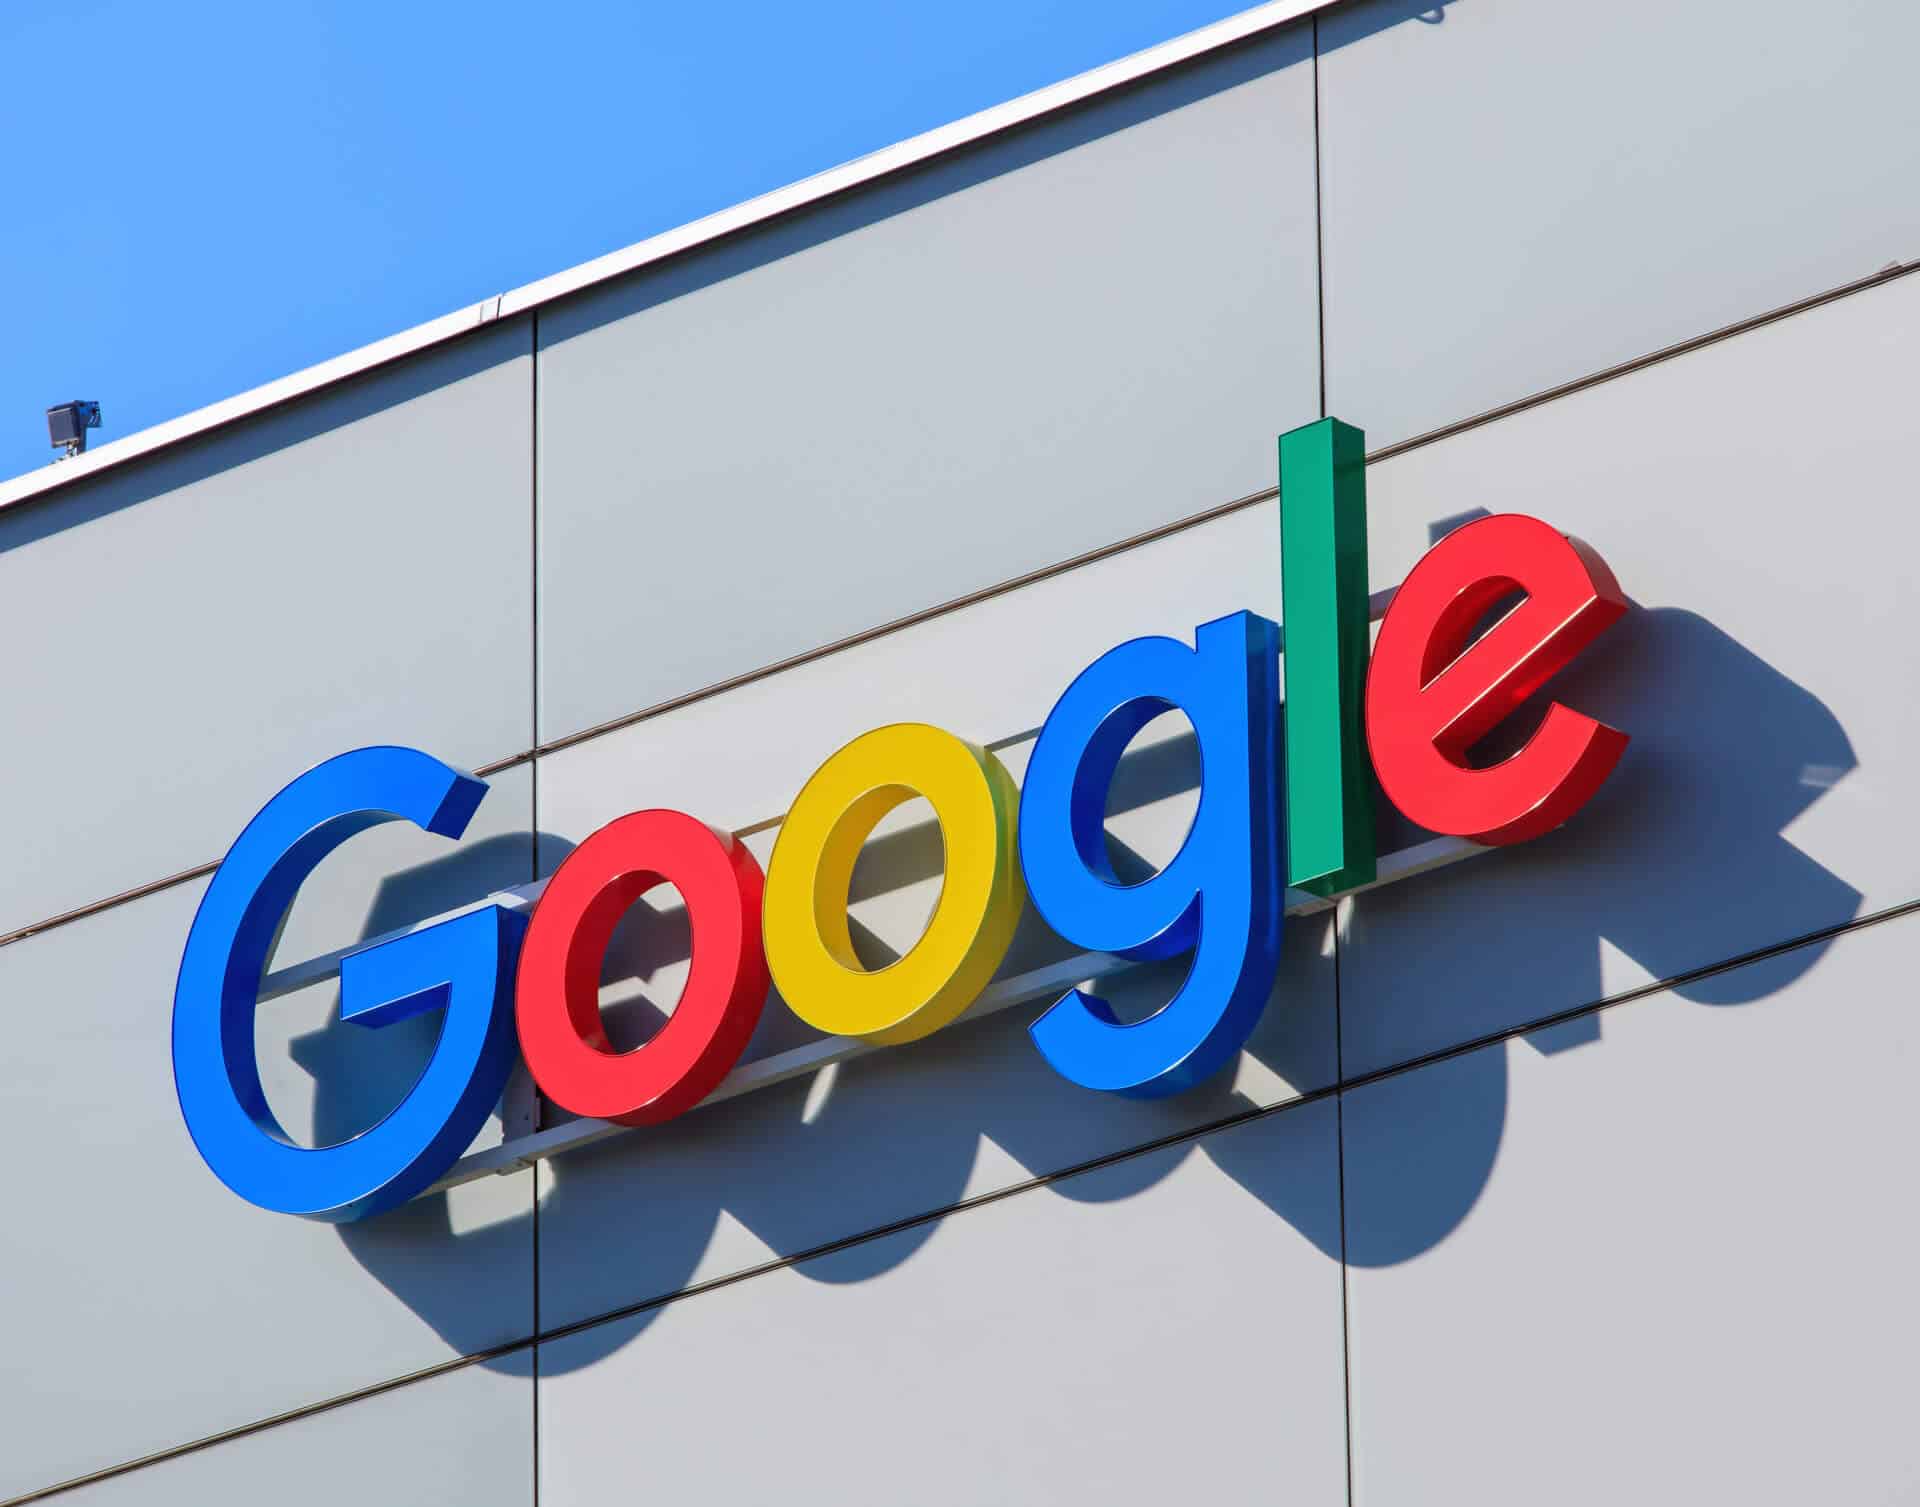 گوگل در دیوان دادگستری اروپا، آخرین تلاش برای لغو جریمه ضد انحصارطلبی ۲.۴۲ میلیارد یورویی (۲.۶ میلیارد دلار) اتحادیه اروپا که برای سوءاستفاده این شرکت آمریکایی از سرویس خریدش اعمال شده است را انجام داد.

